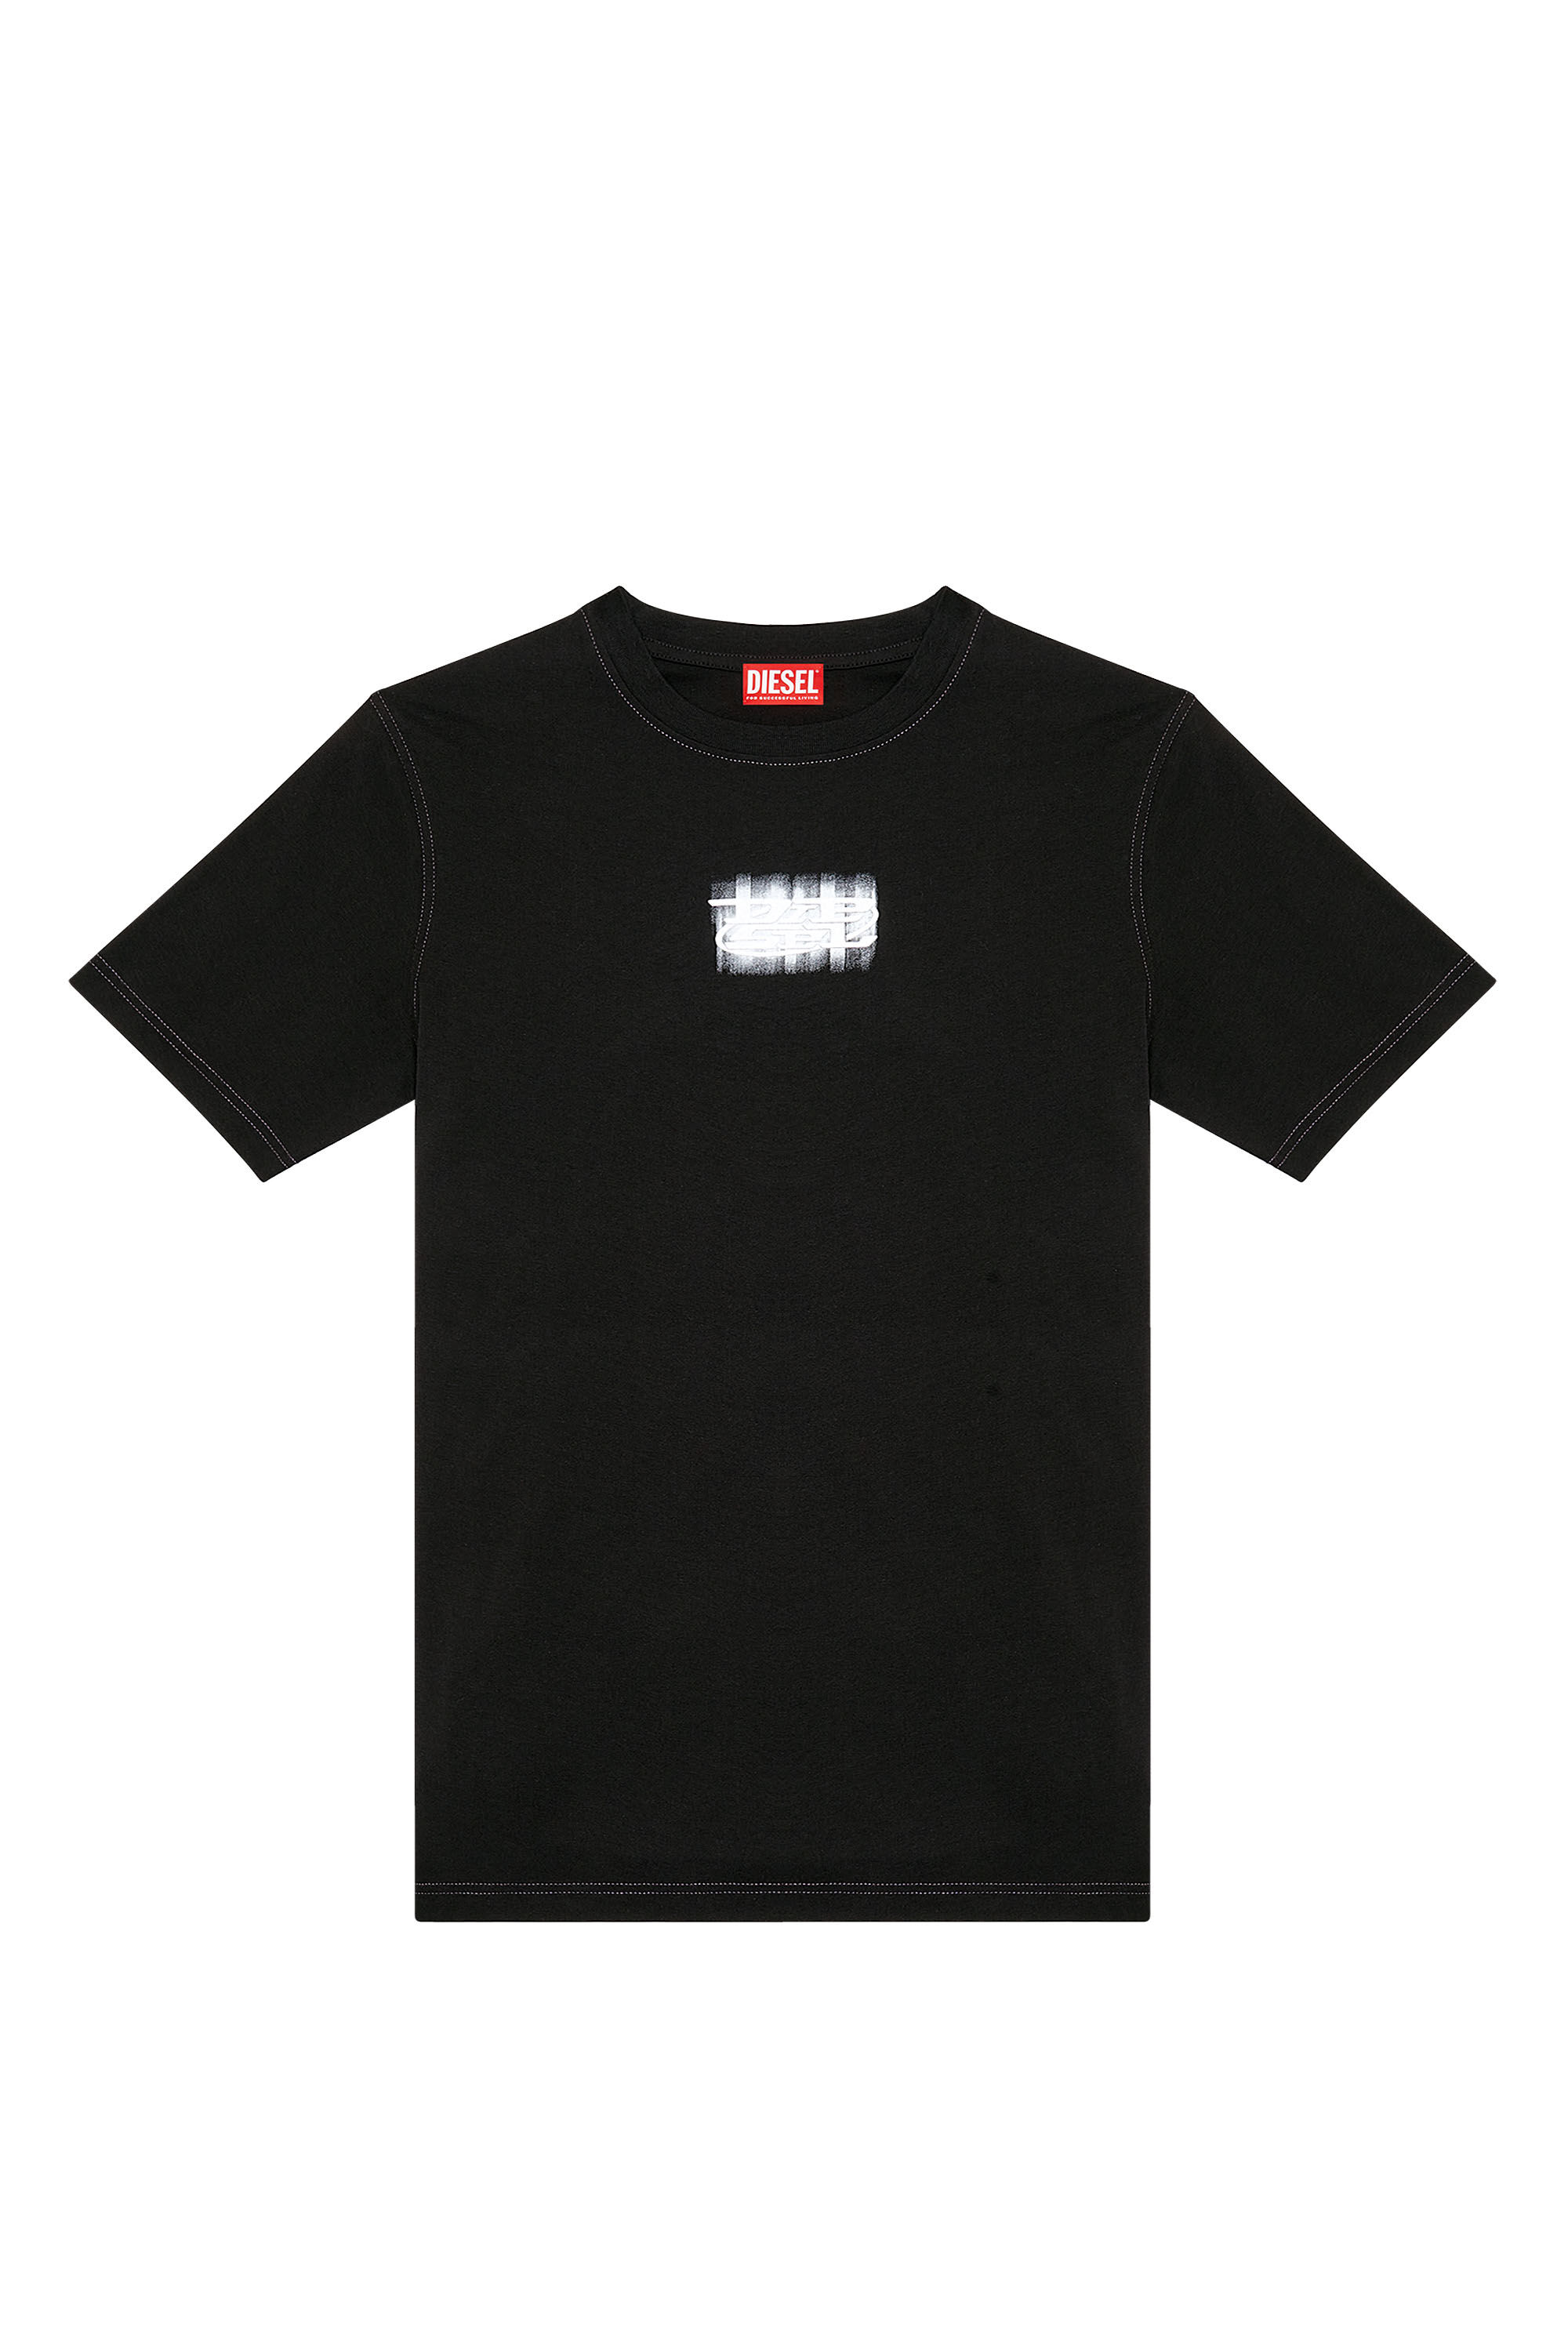 Diesel - T-JUST-N4, Hombre Camiseta de algodón orgánico con logotipo en relieve in Negro - Image 2